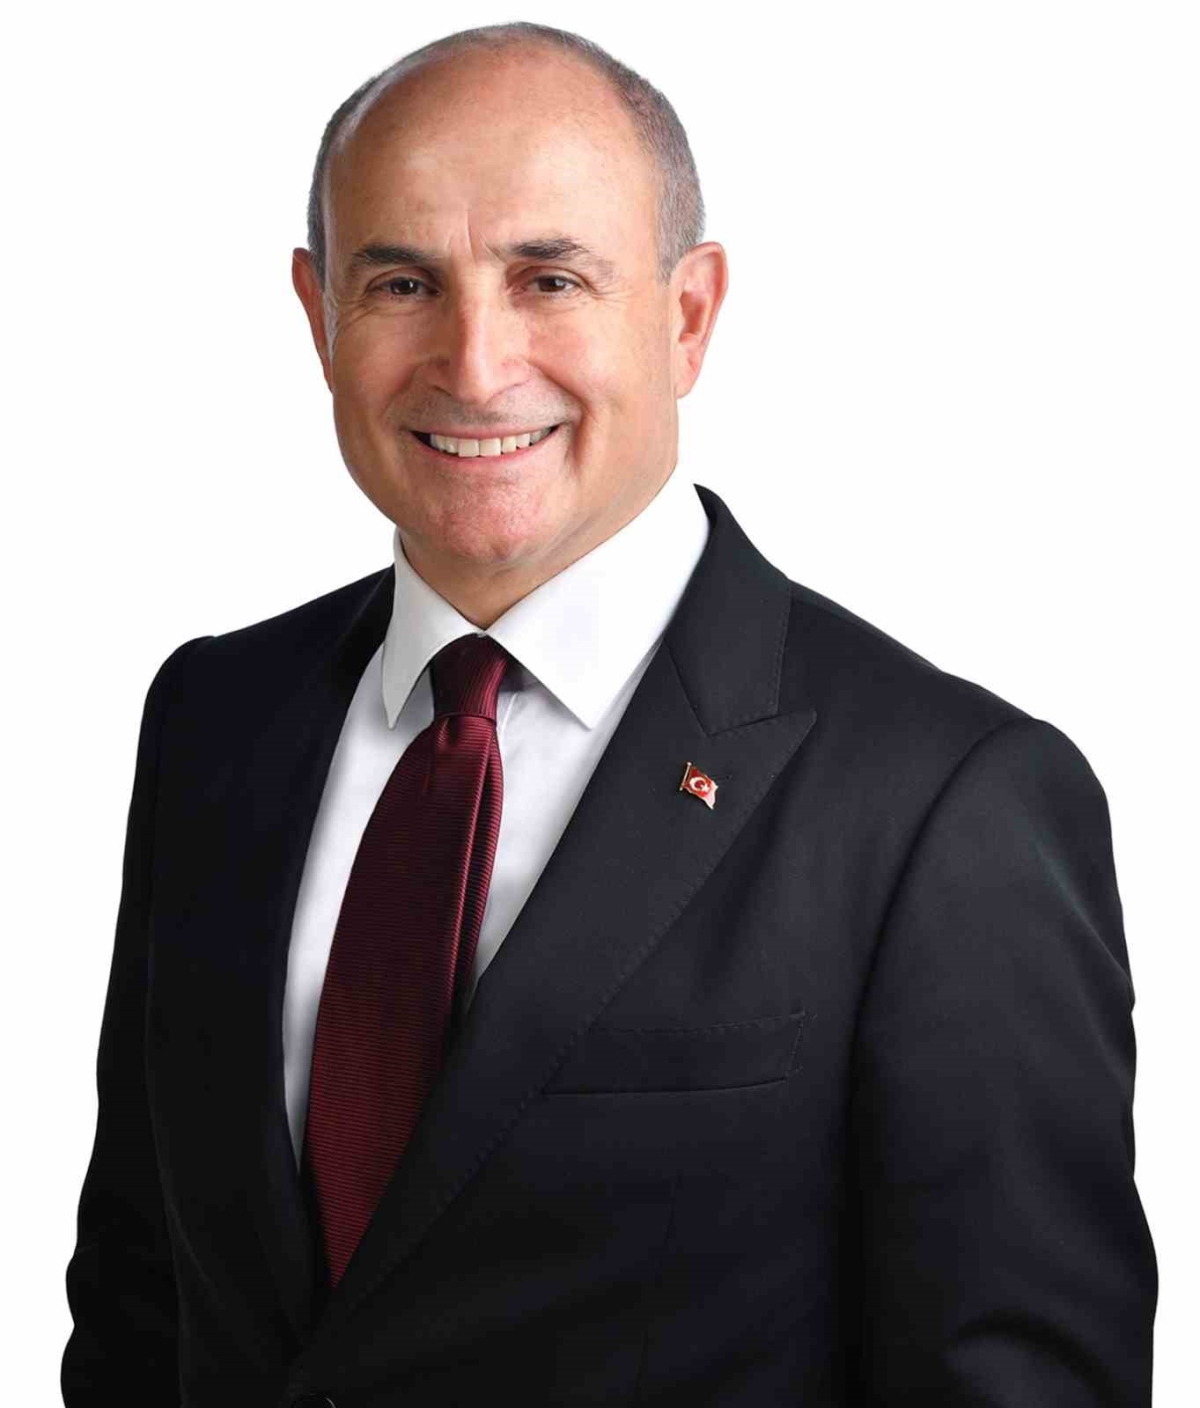 Büyükçekmece Belediye Başkanı Akgün’den yeni yıl mesajı “Sağlık, mutluluk ve barış getirsin”
